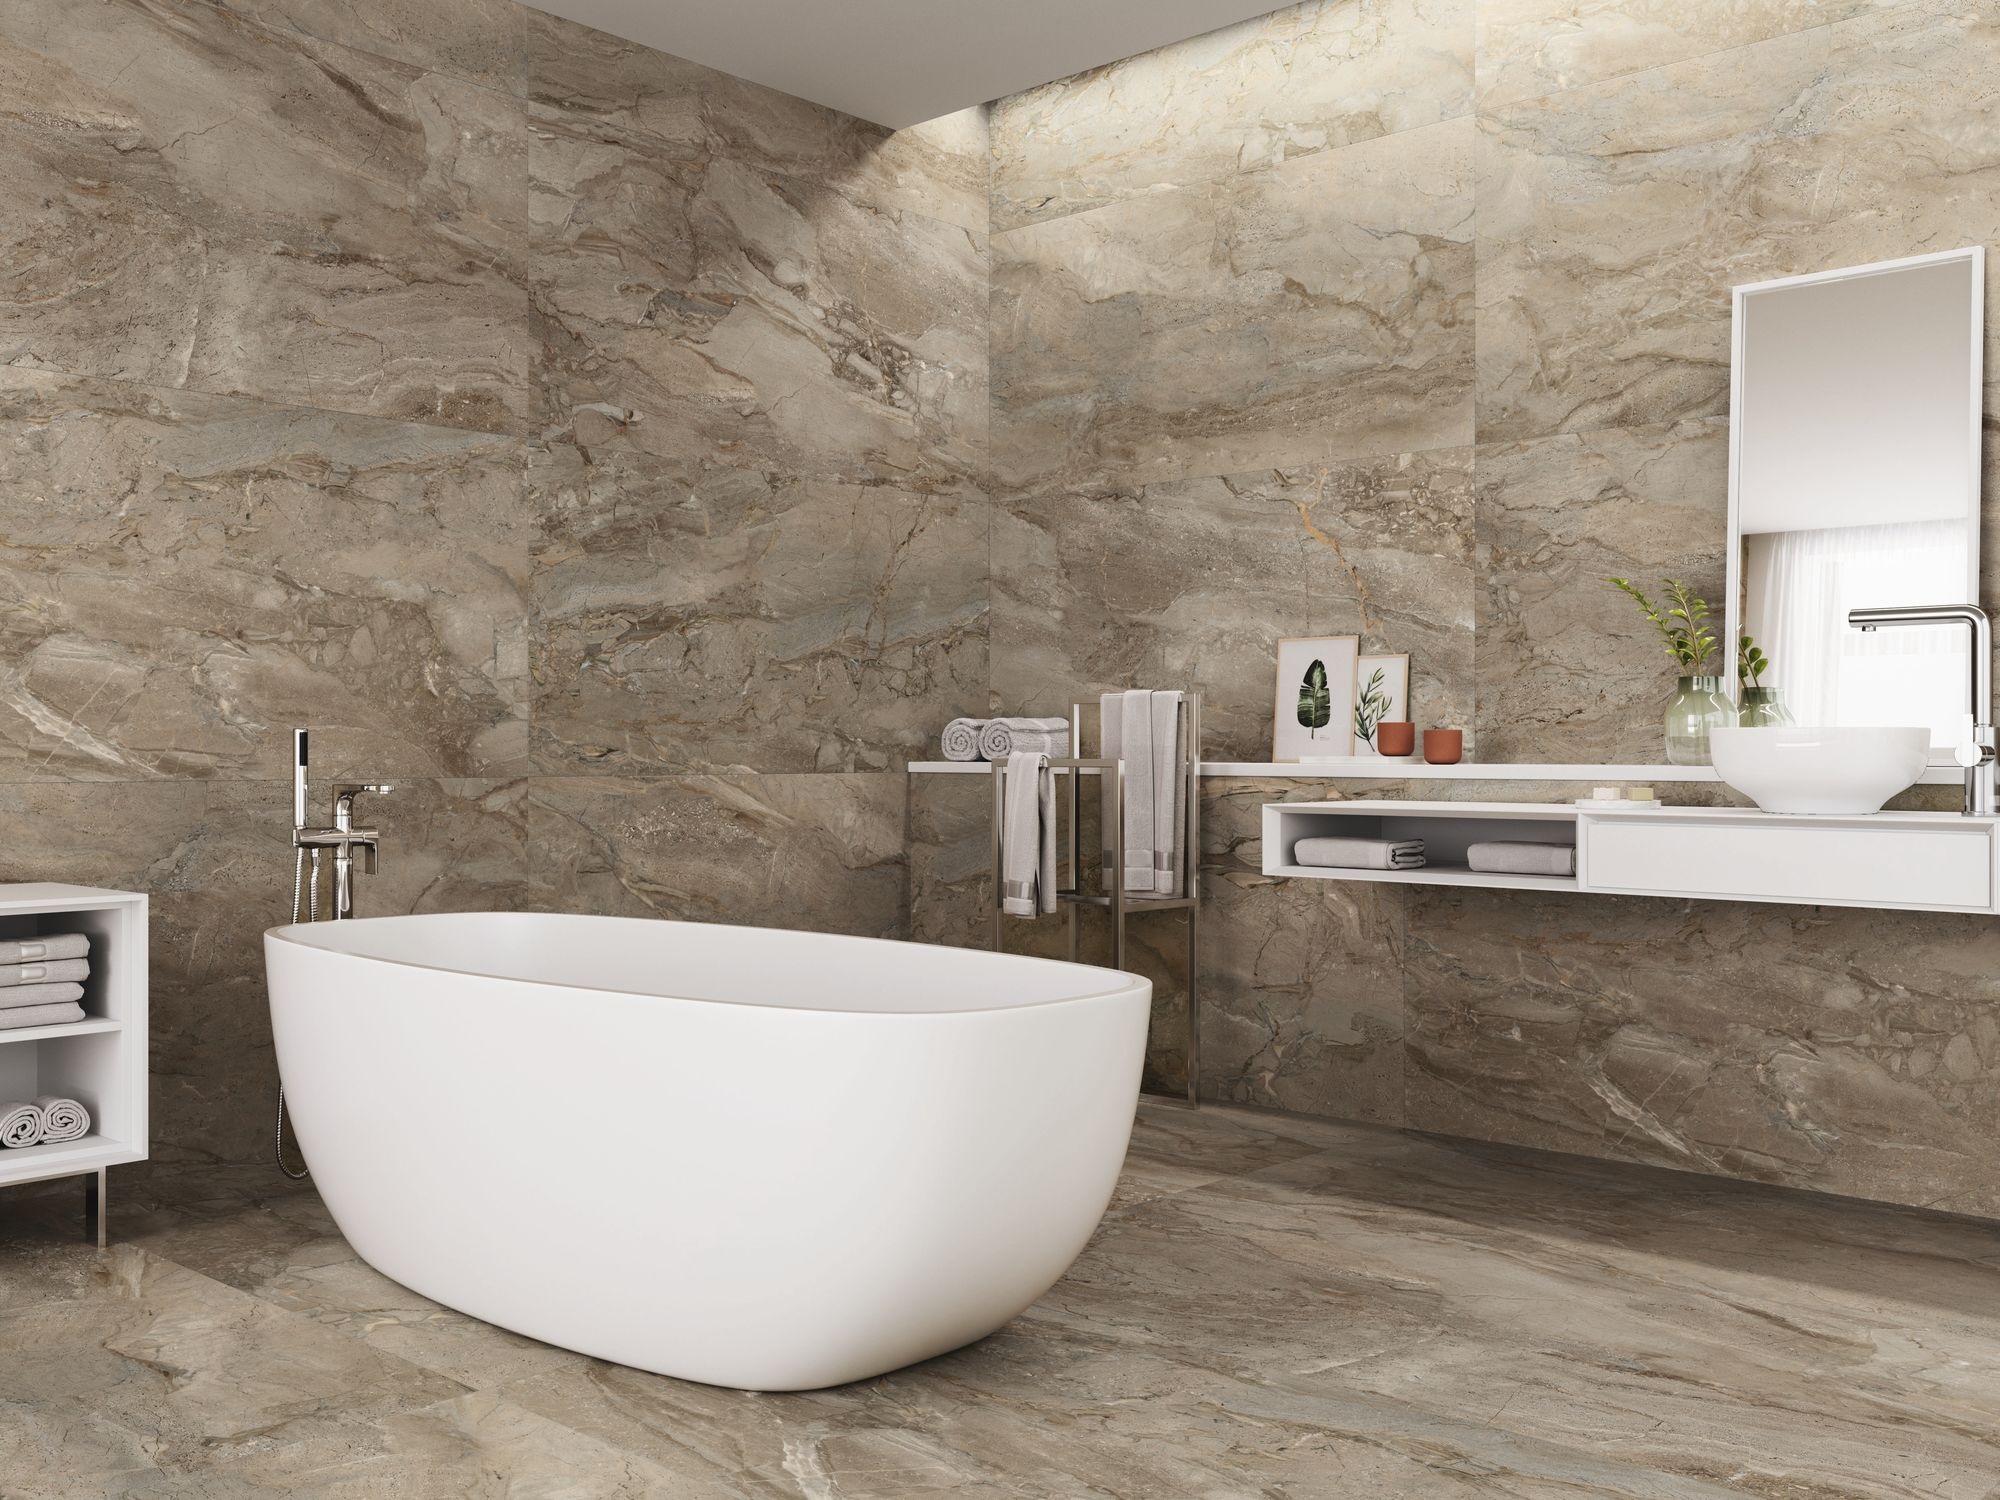 Carrelage marbre marron avec nuances beiges et gris 60x60 cm dans une salle de bain tons neutres avec baignoire blanche et meubles modernes